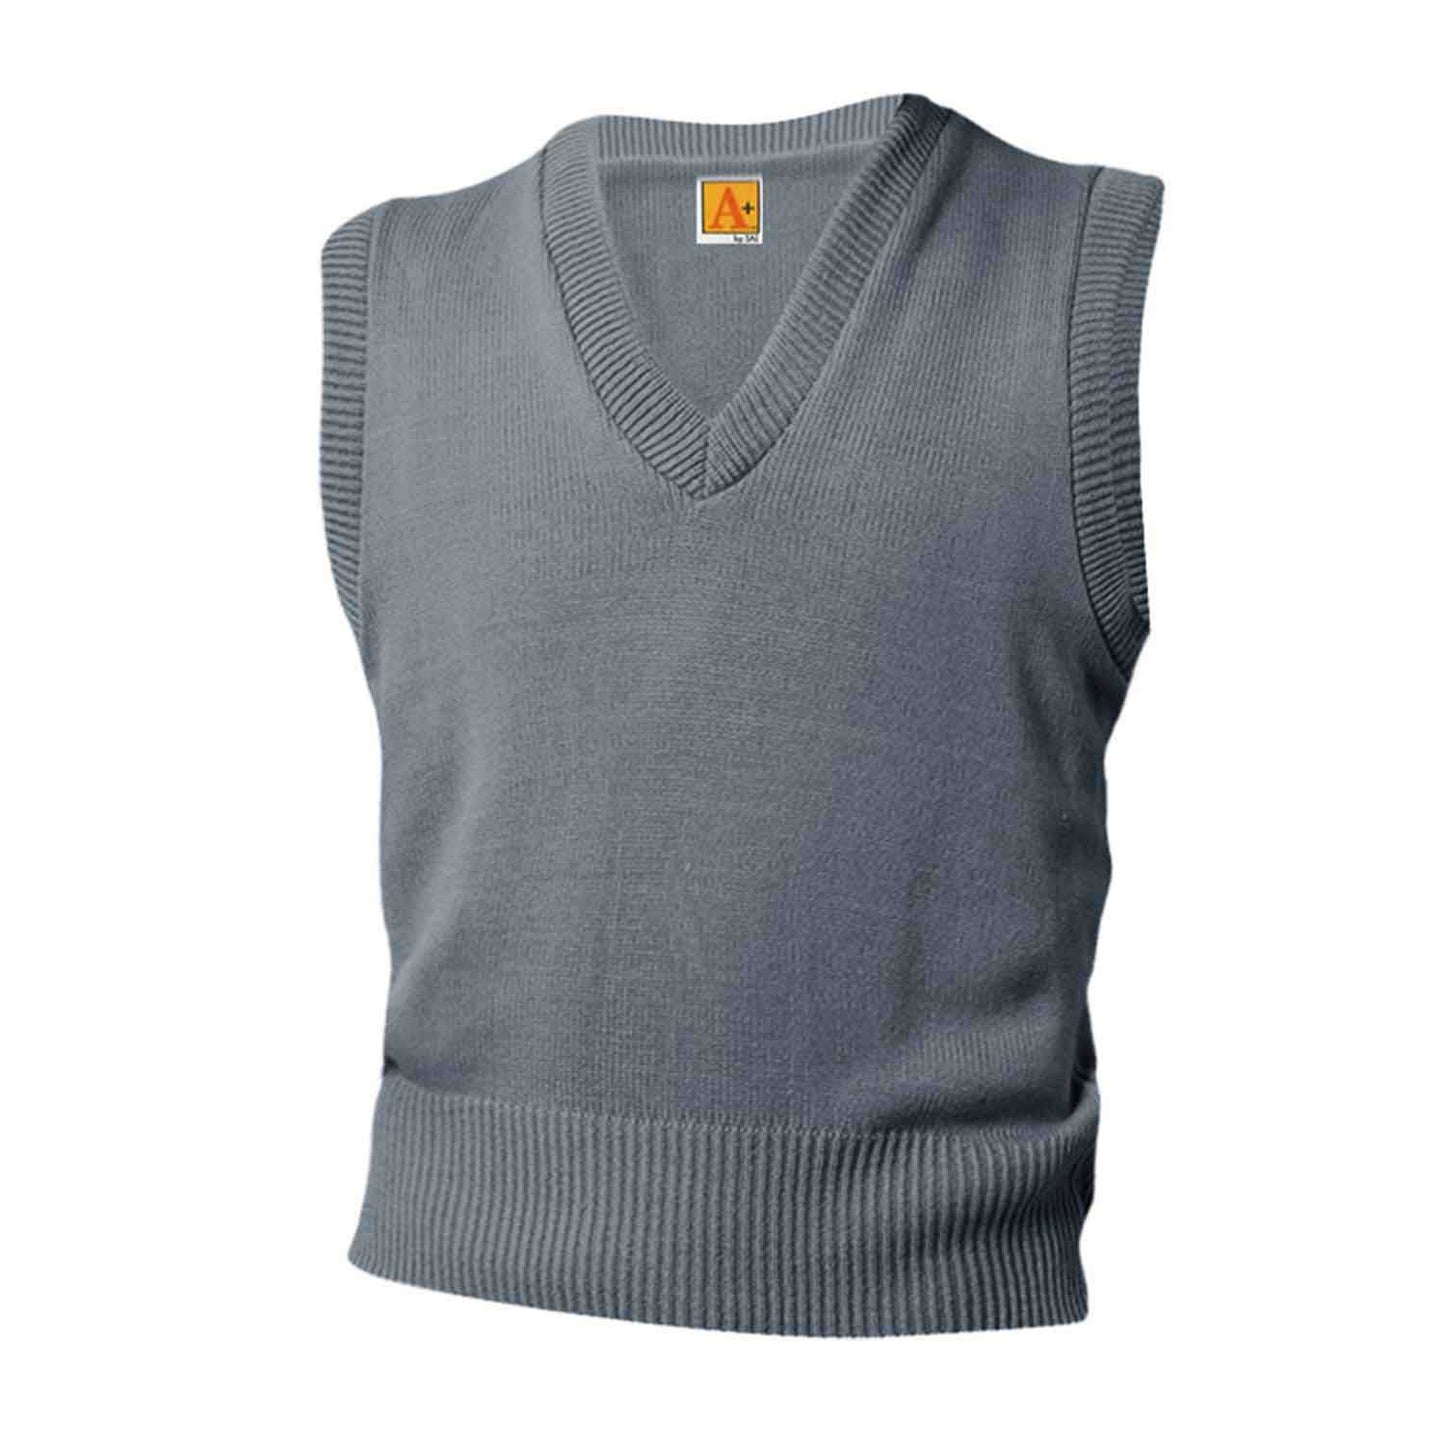 Unisex V-Neck Pullover Jersey Knit Sweater Vest w/Logo - 1108